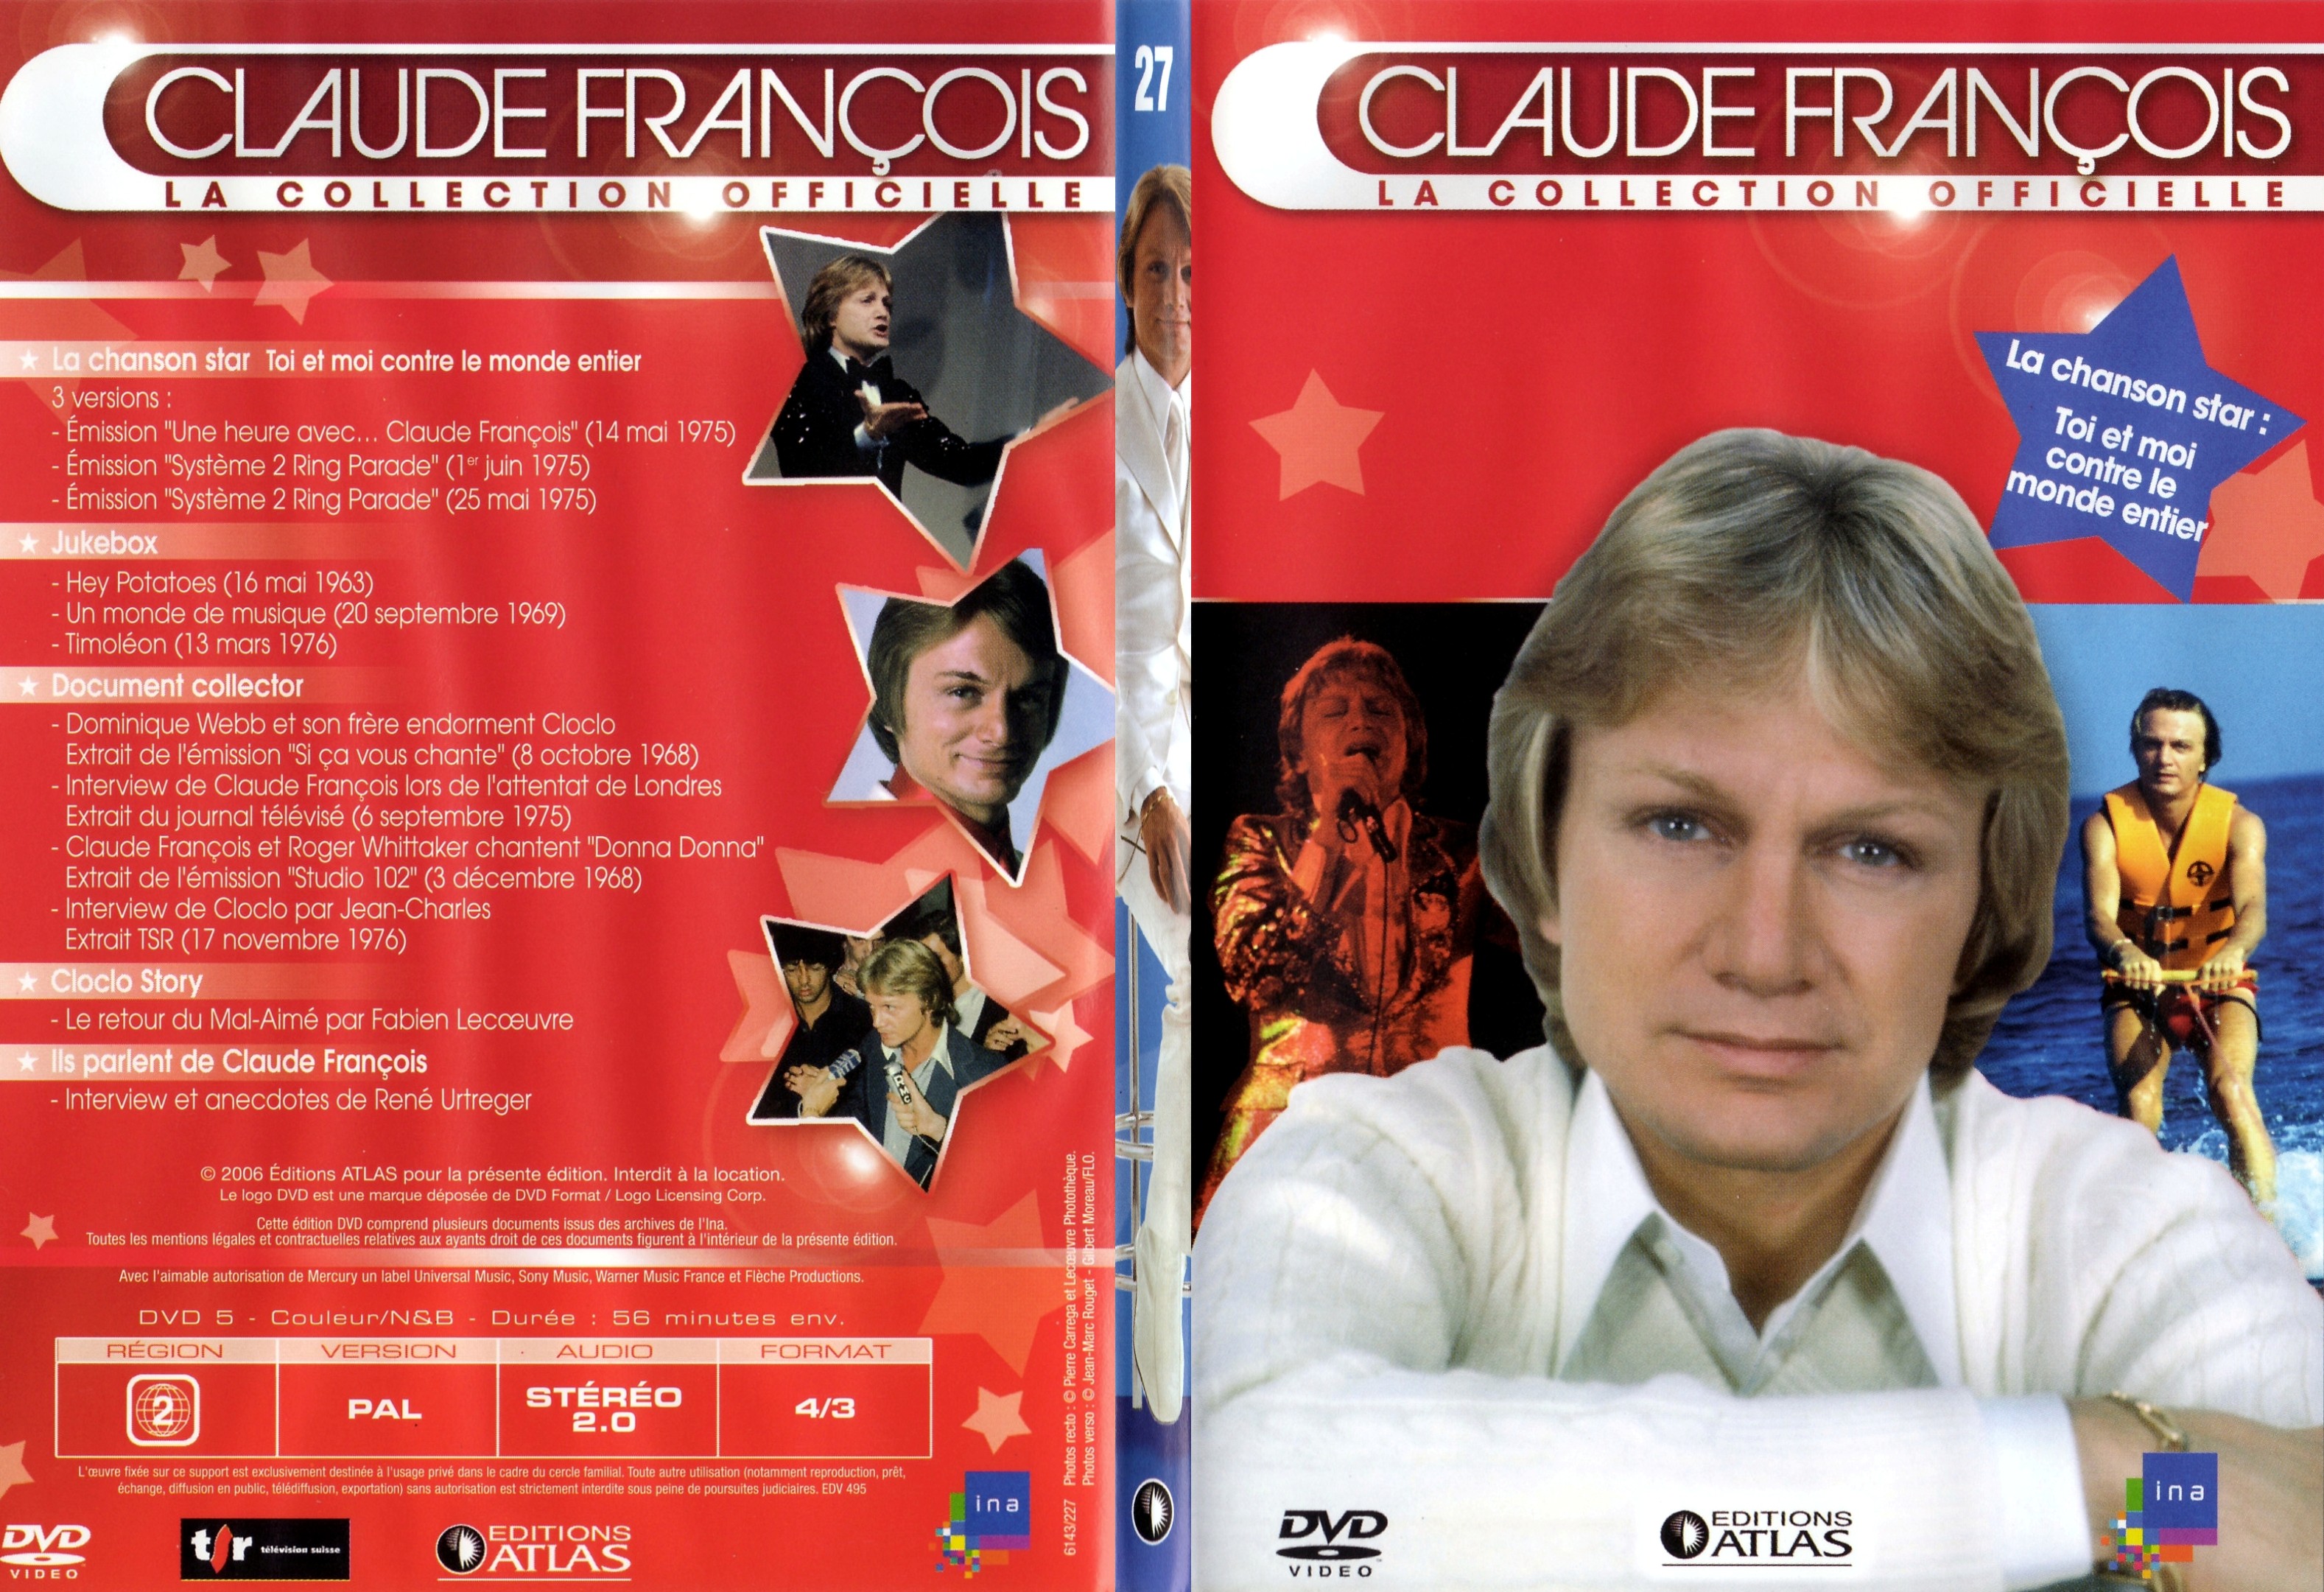 Jaquette DVD Claude francois le collection officielle vol 27 - SLIM